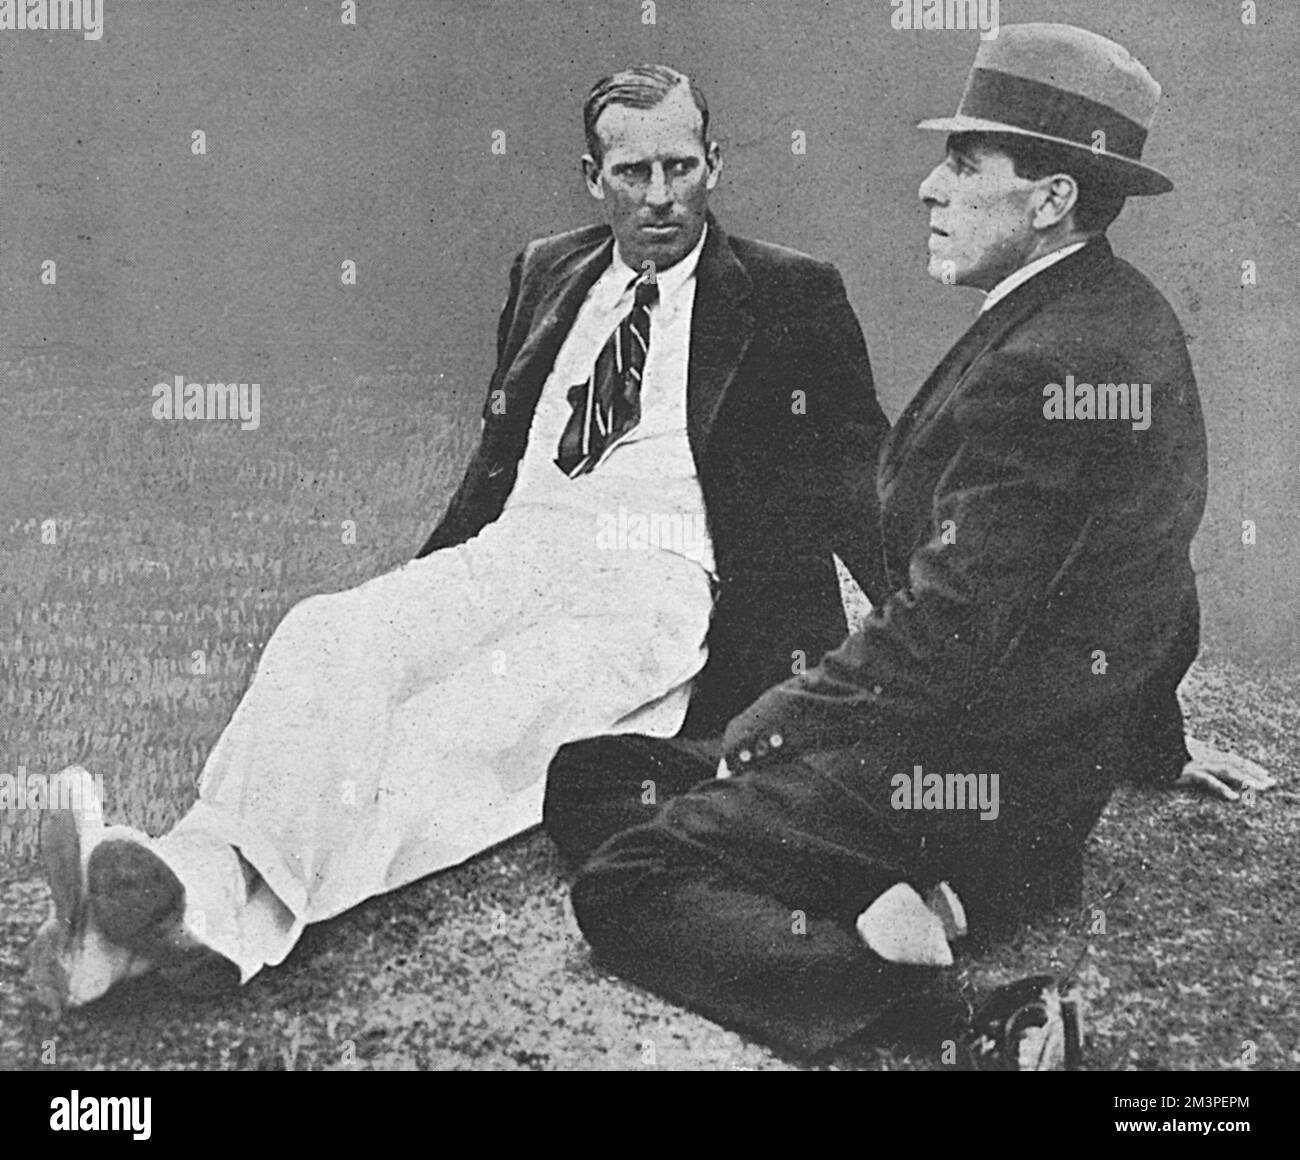 Anthony Wilding und Norman Brookes als „Gentlemen in waiting“ bei der Wimbledon-Tennismeisterschaft 1914 im Juli 1914. Wilding, der die letzten vier Singles-Meisterschaften der Männer gewonnen hatte, wurde im Finale dieses Jahres von Brookes geschlagen. Er wurde im folgenden Mai in der Schlacht von Aubers Ridge getötet. Datum: 1914 Stockfoto